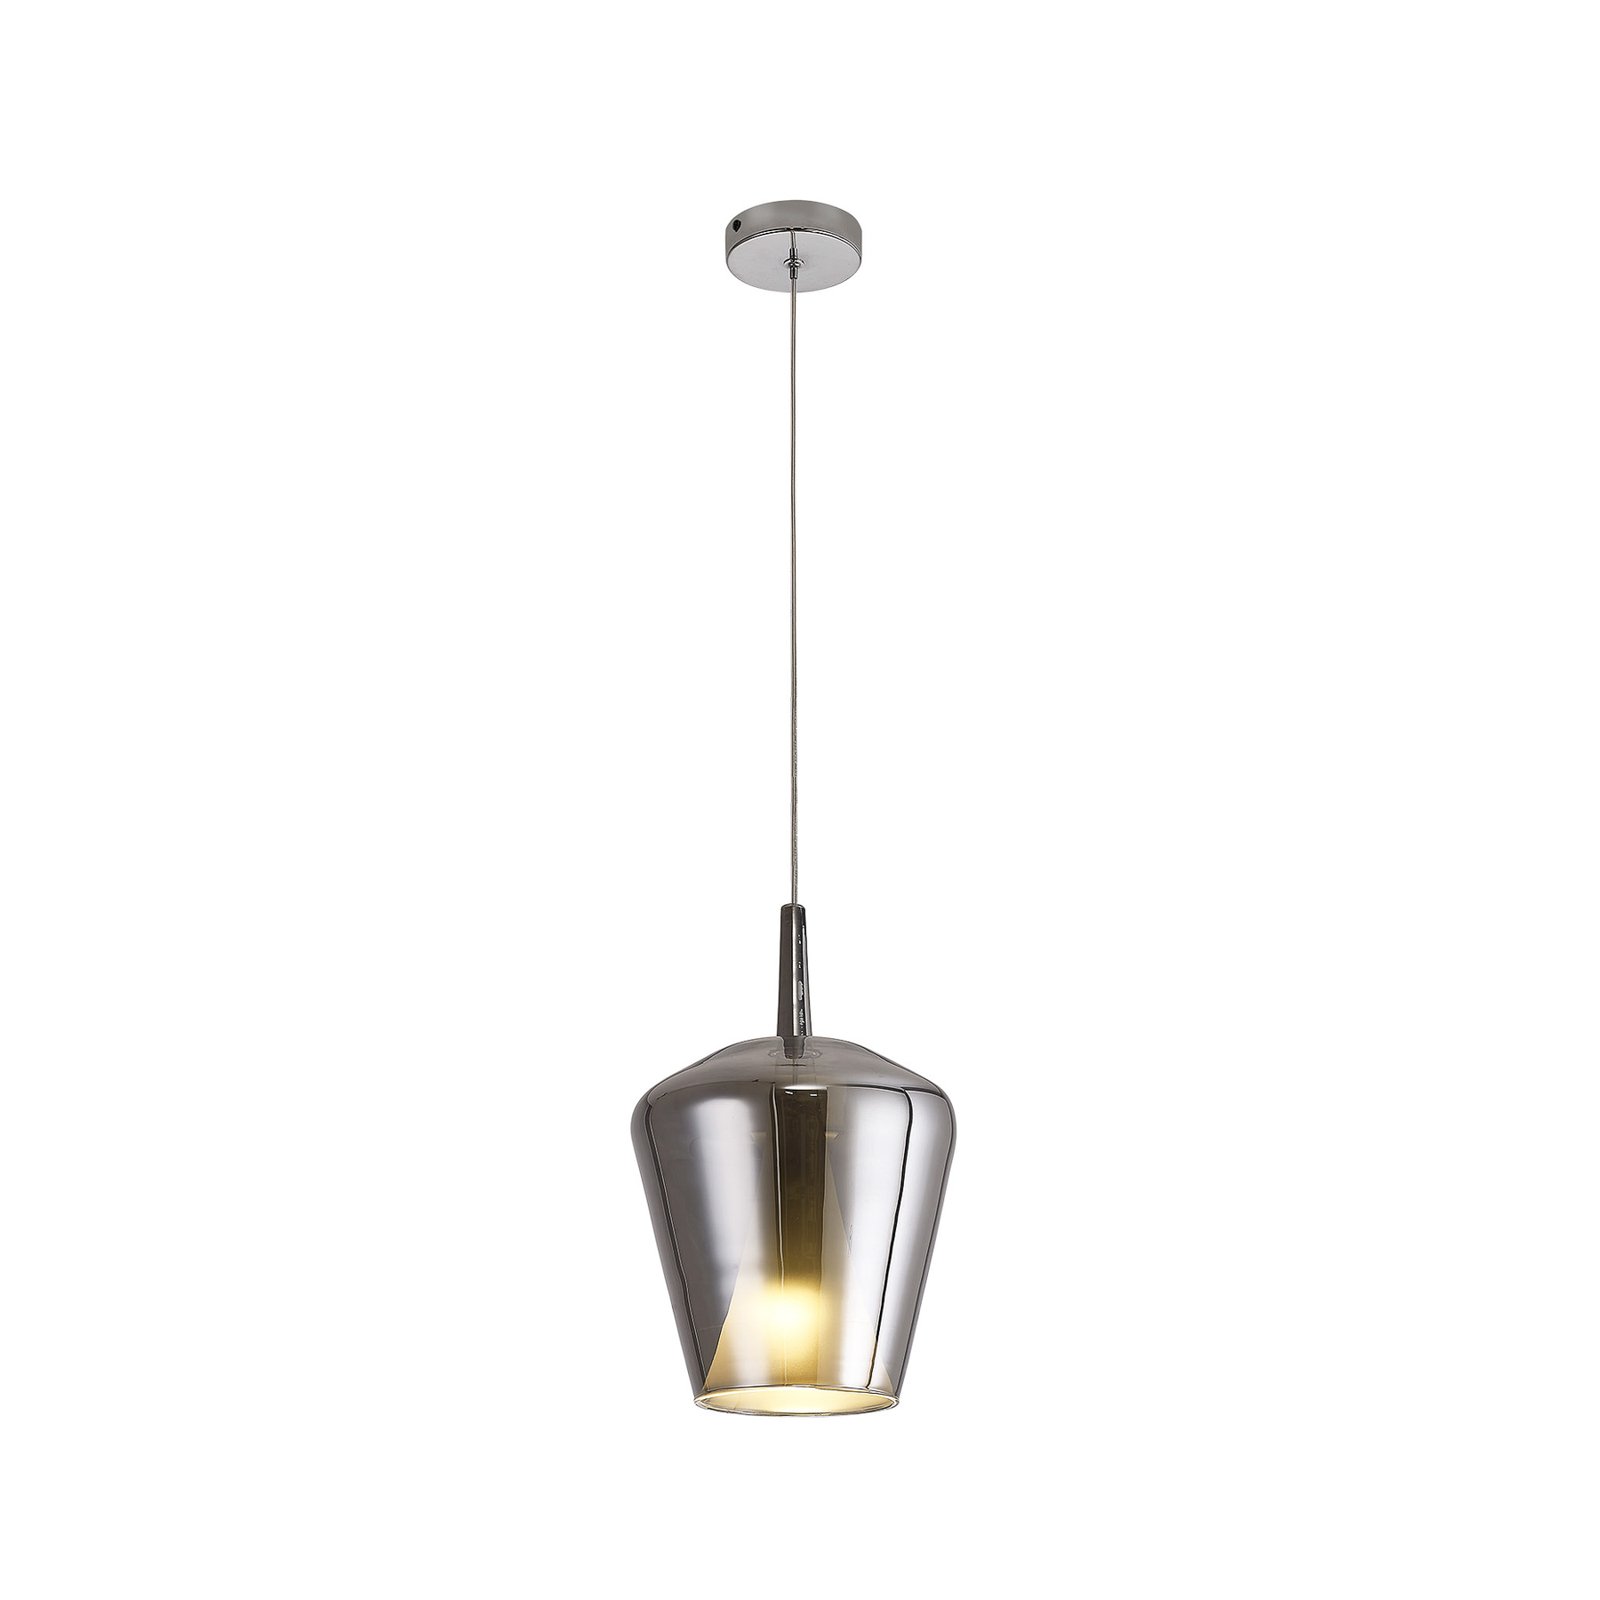 Elsa hanglamp, 1-lamp, Ø 22,5 cm, glas, chroom